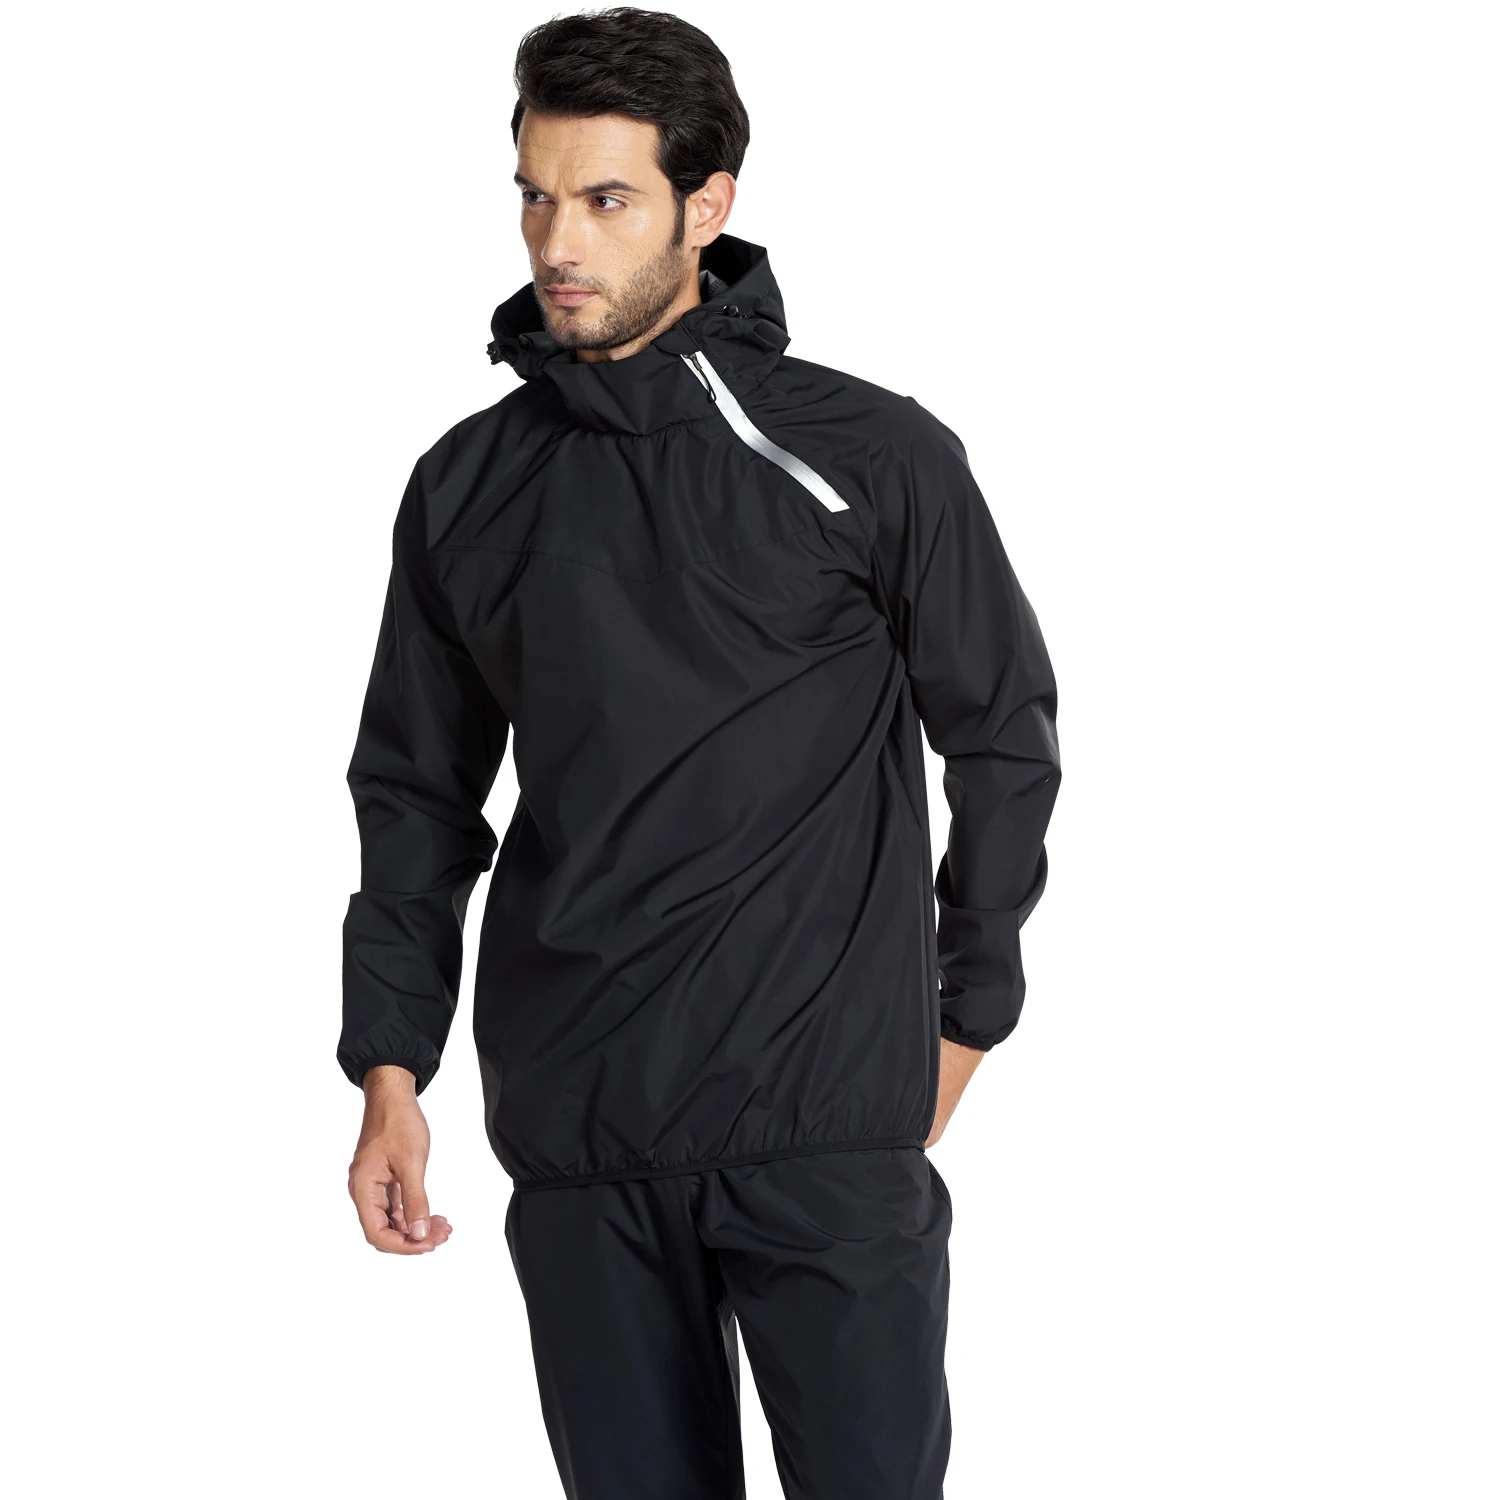 

Flygaga Weight Loss Corset shirt Sweat Sauna Suit Waist Trainer Vest For Sport Workout Neoprene Shirt Hot Body Shaper